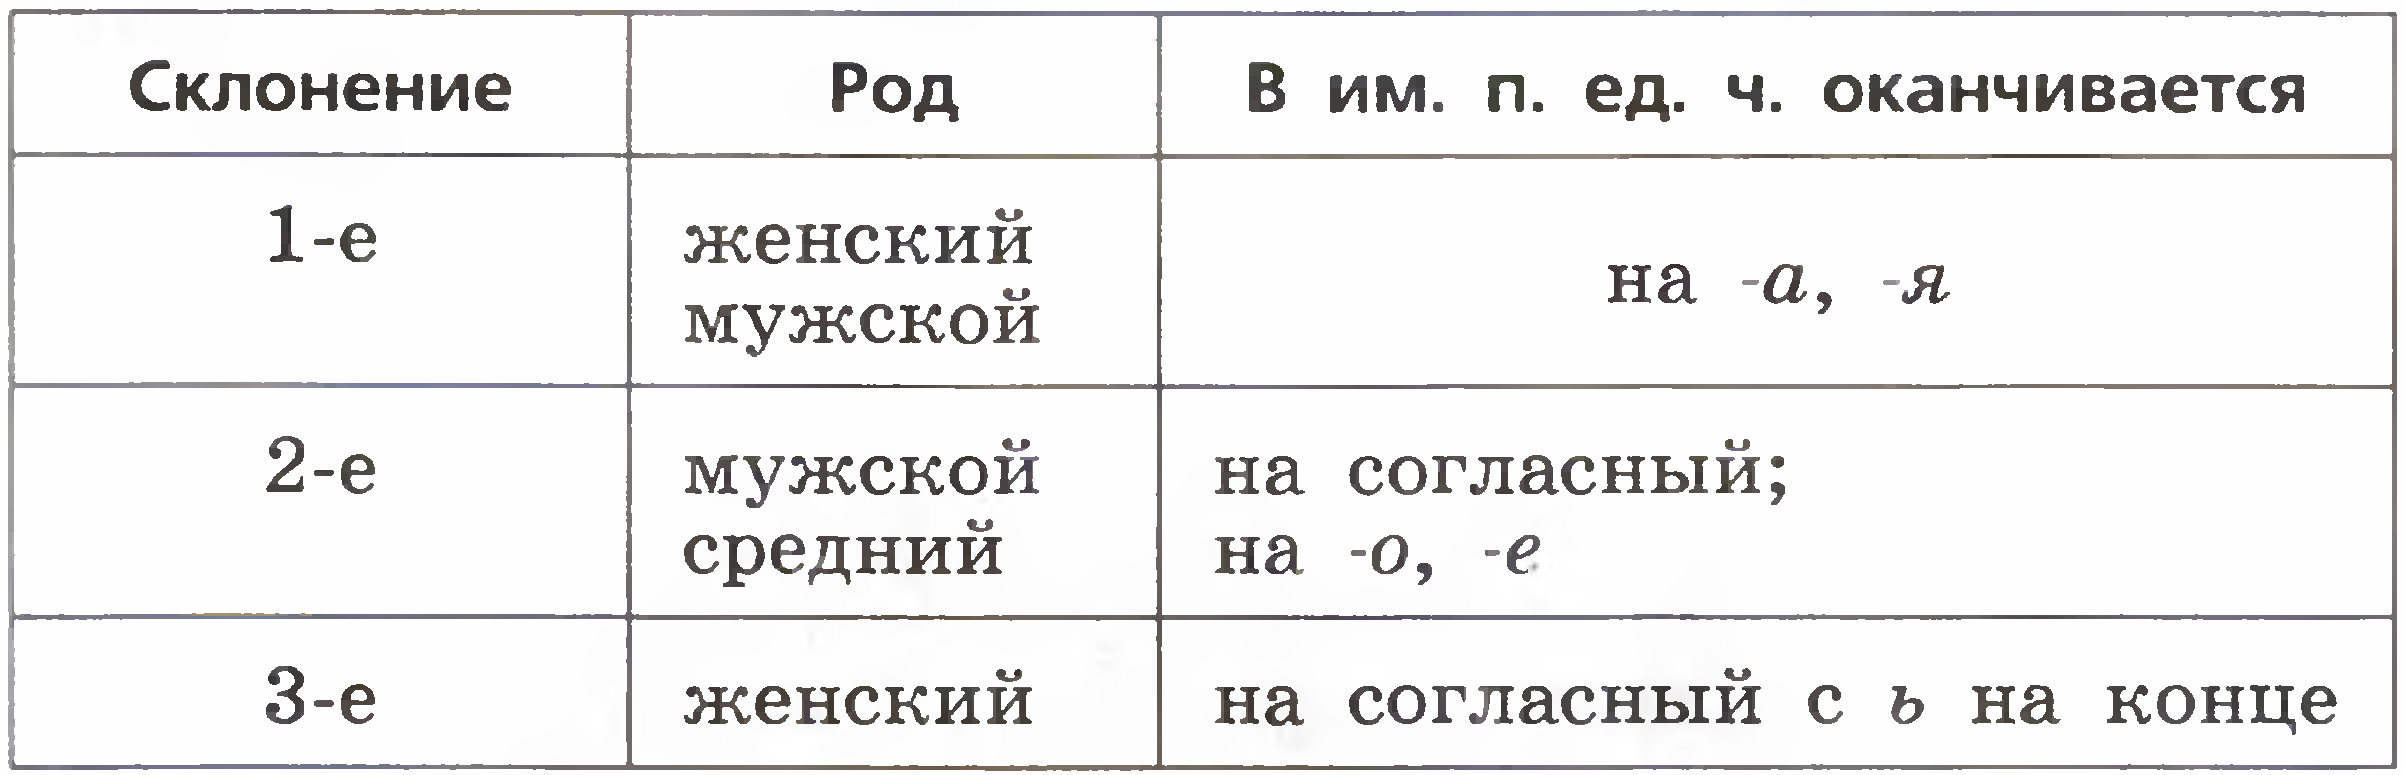 Склонения существительных в русском языке 5 класс. Таблица склонений имён существительных 5 класс. Склонение существительных 5 класс таблица. Таблица склонений 5 класс. Склонения существительных таблица черно белая.